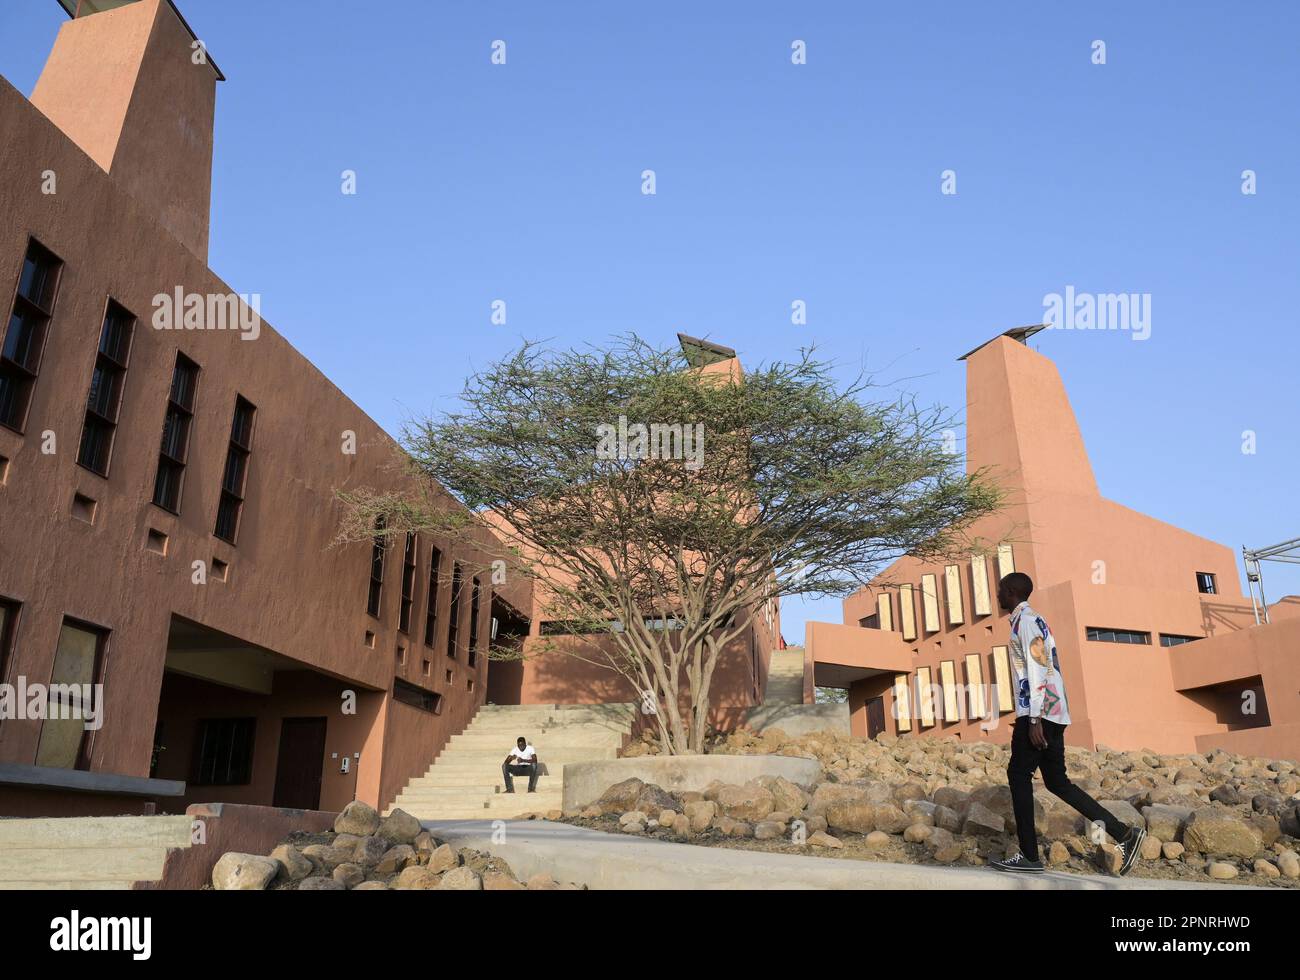 KENIA, Turkana, IT Campus of Loropio, Initiative Learning Lions, digitale Bildung für abgelegene afrika initiiert von Prinz Ludwig von Bayern, Architekt des Campus: Francis Kéré Stockfoto